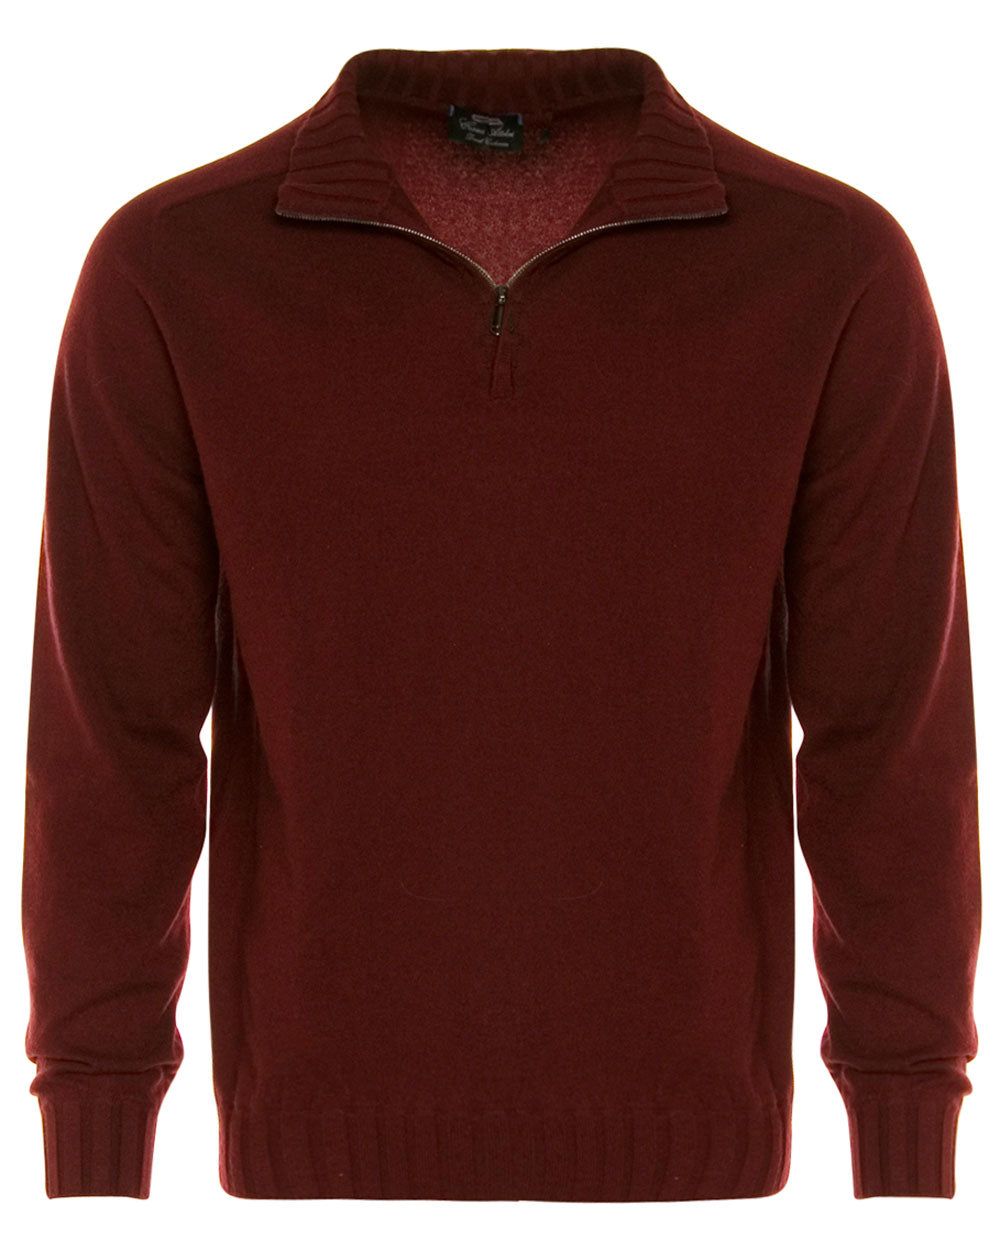 Maroon Cashmere Half Zip Sweater